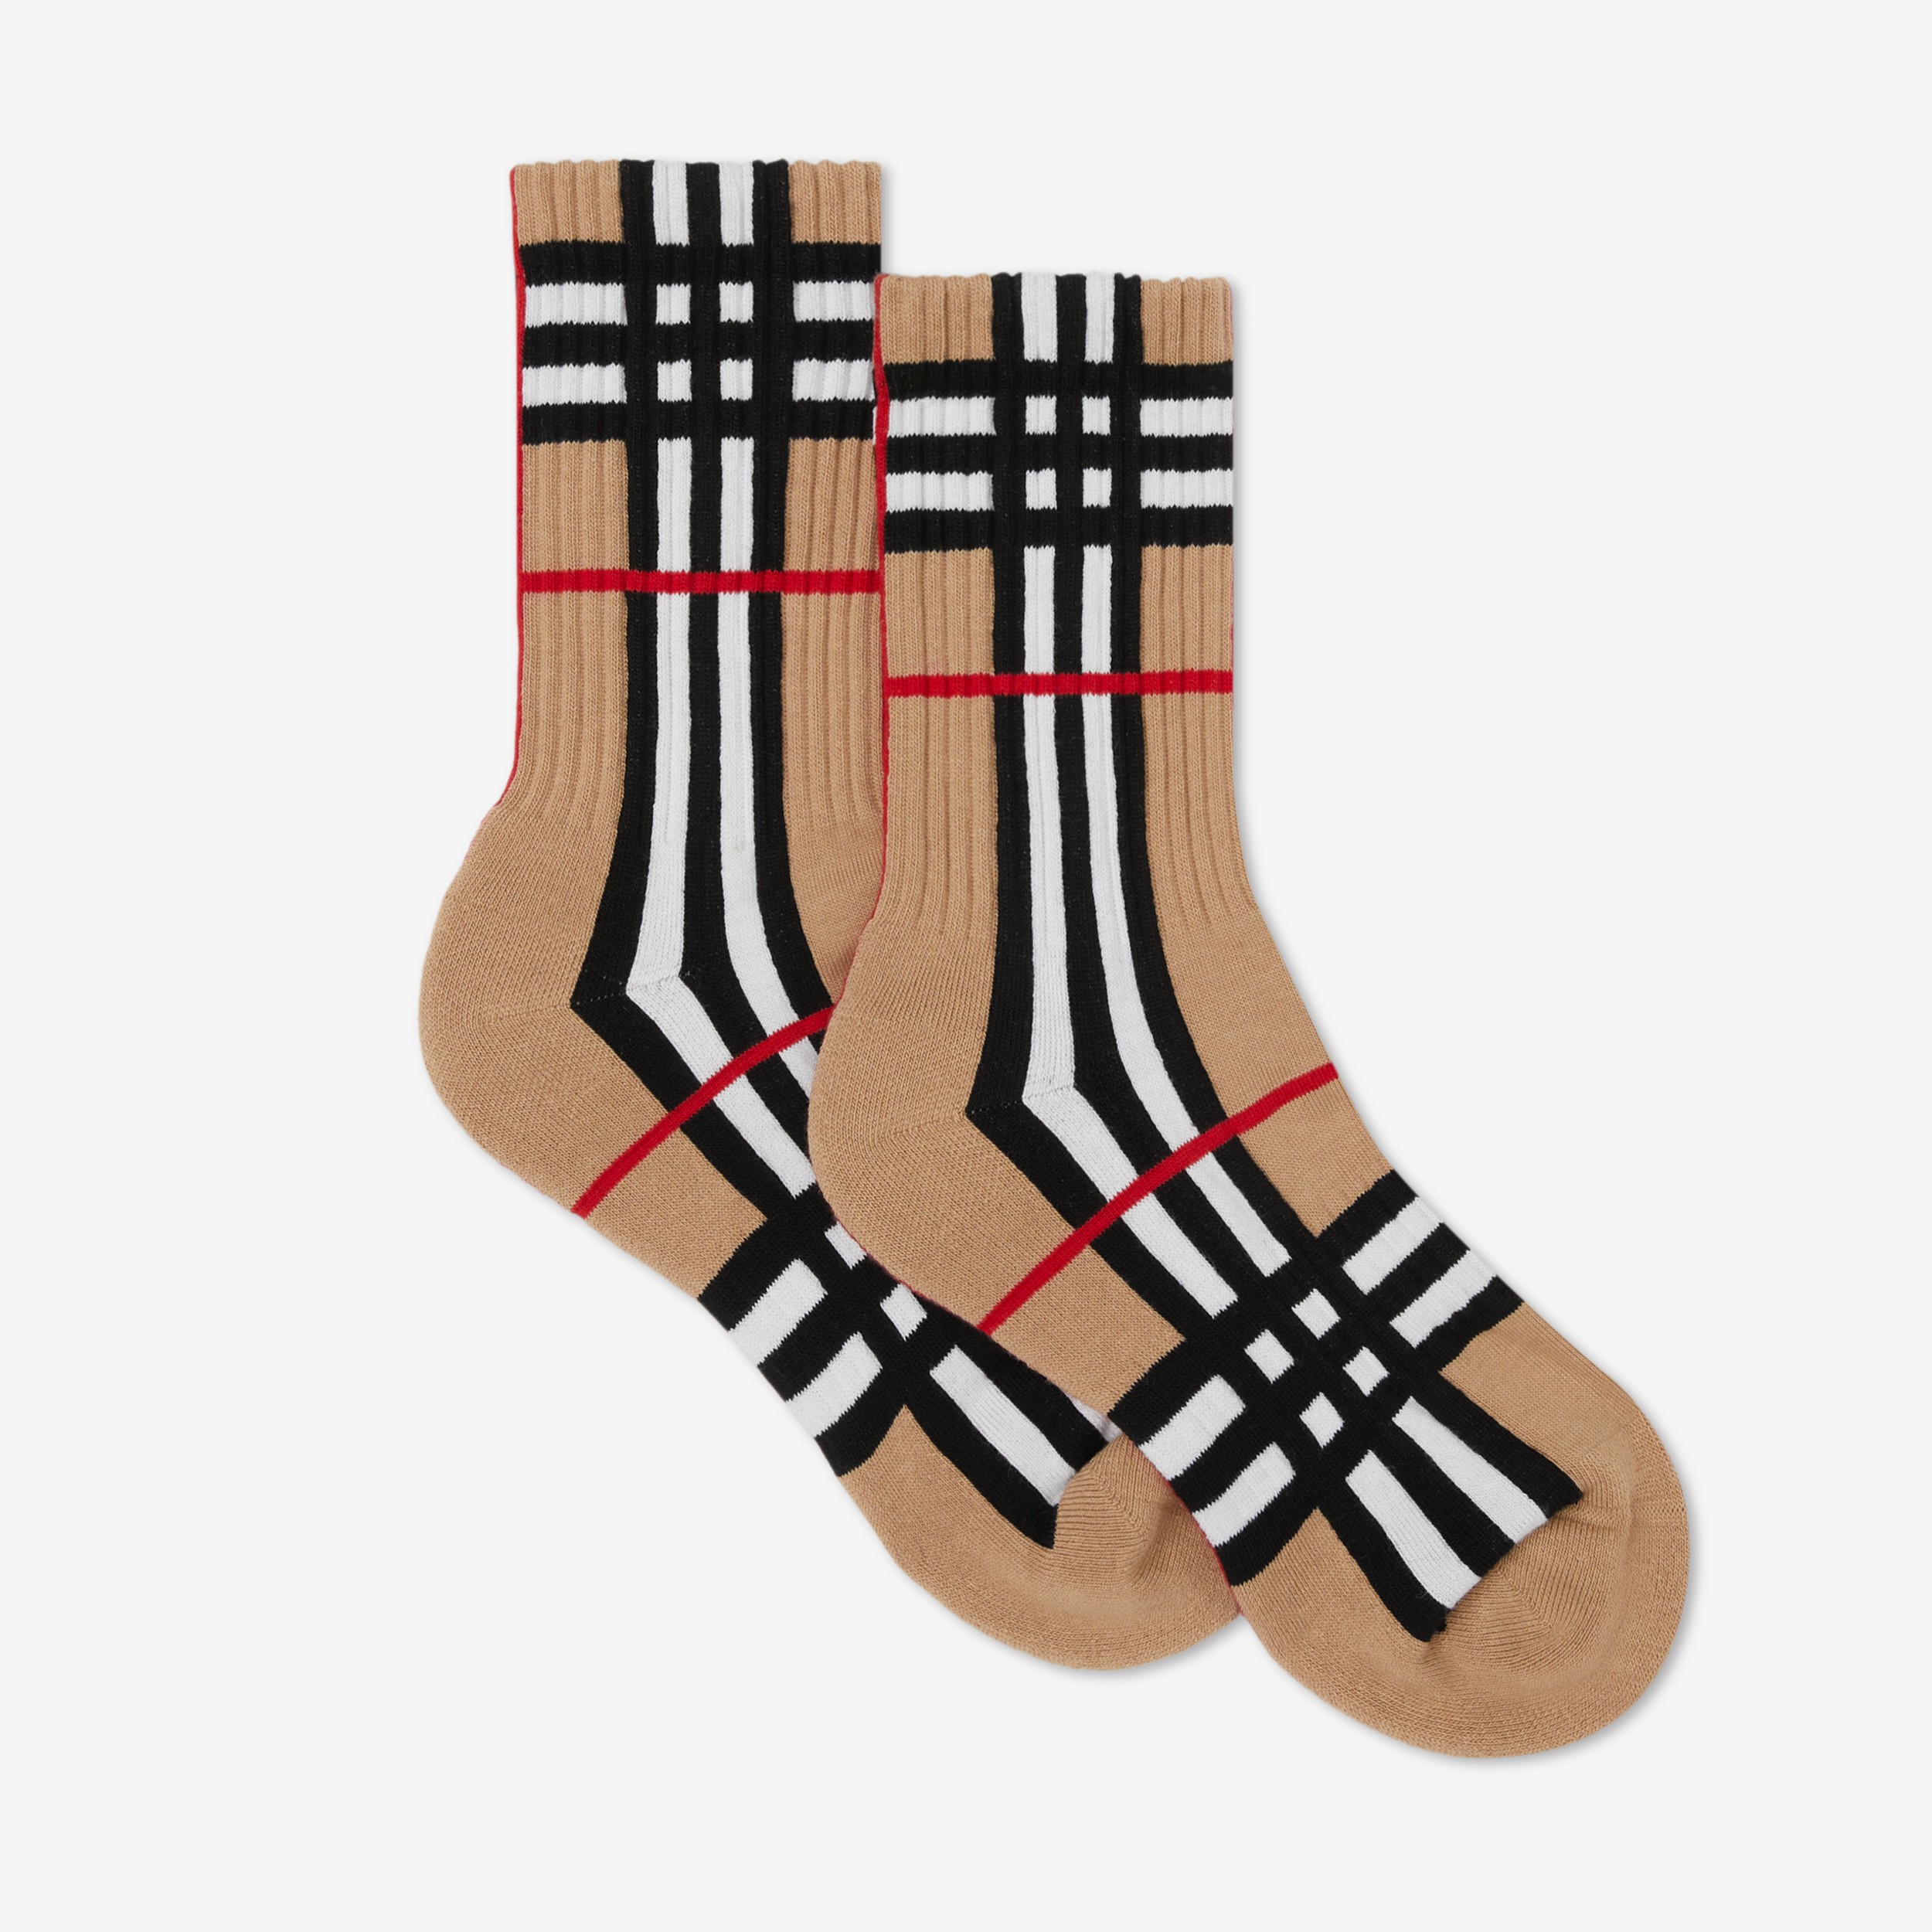 Actualizar 98+ imagen burberry inspired socks